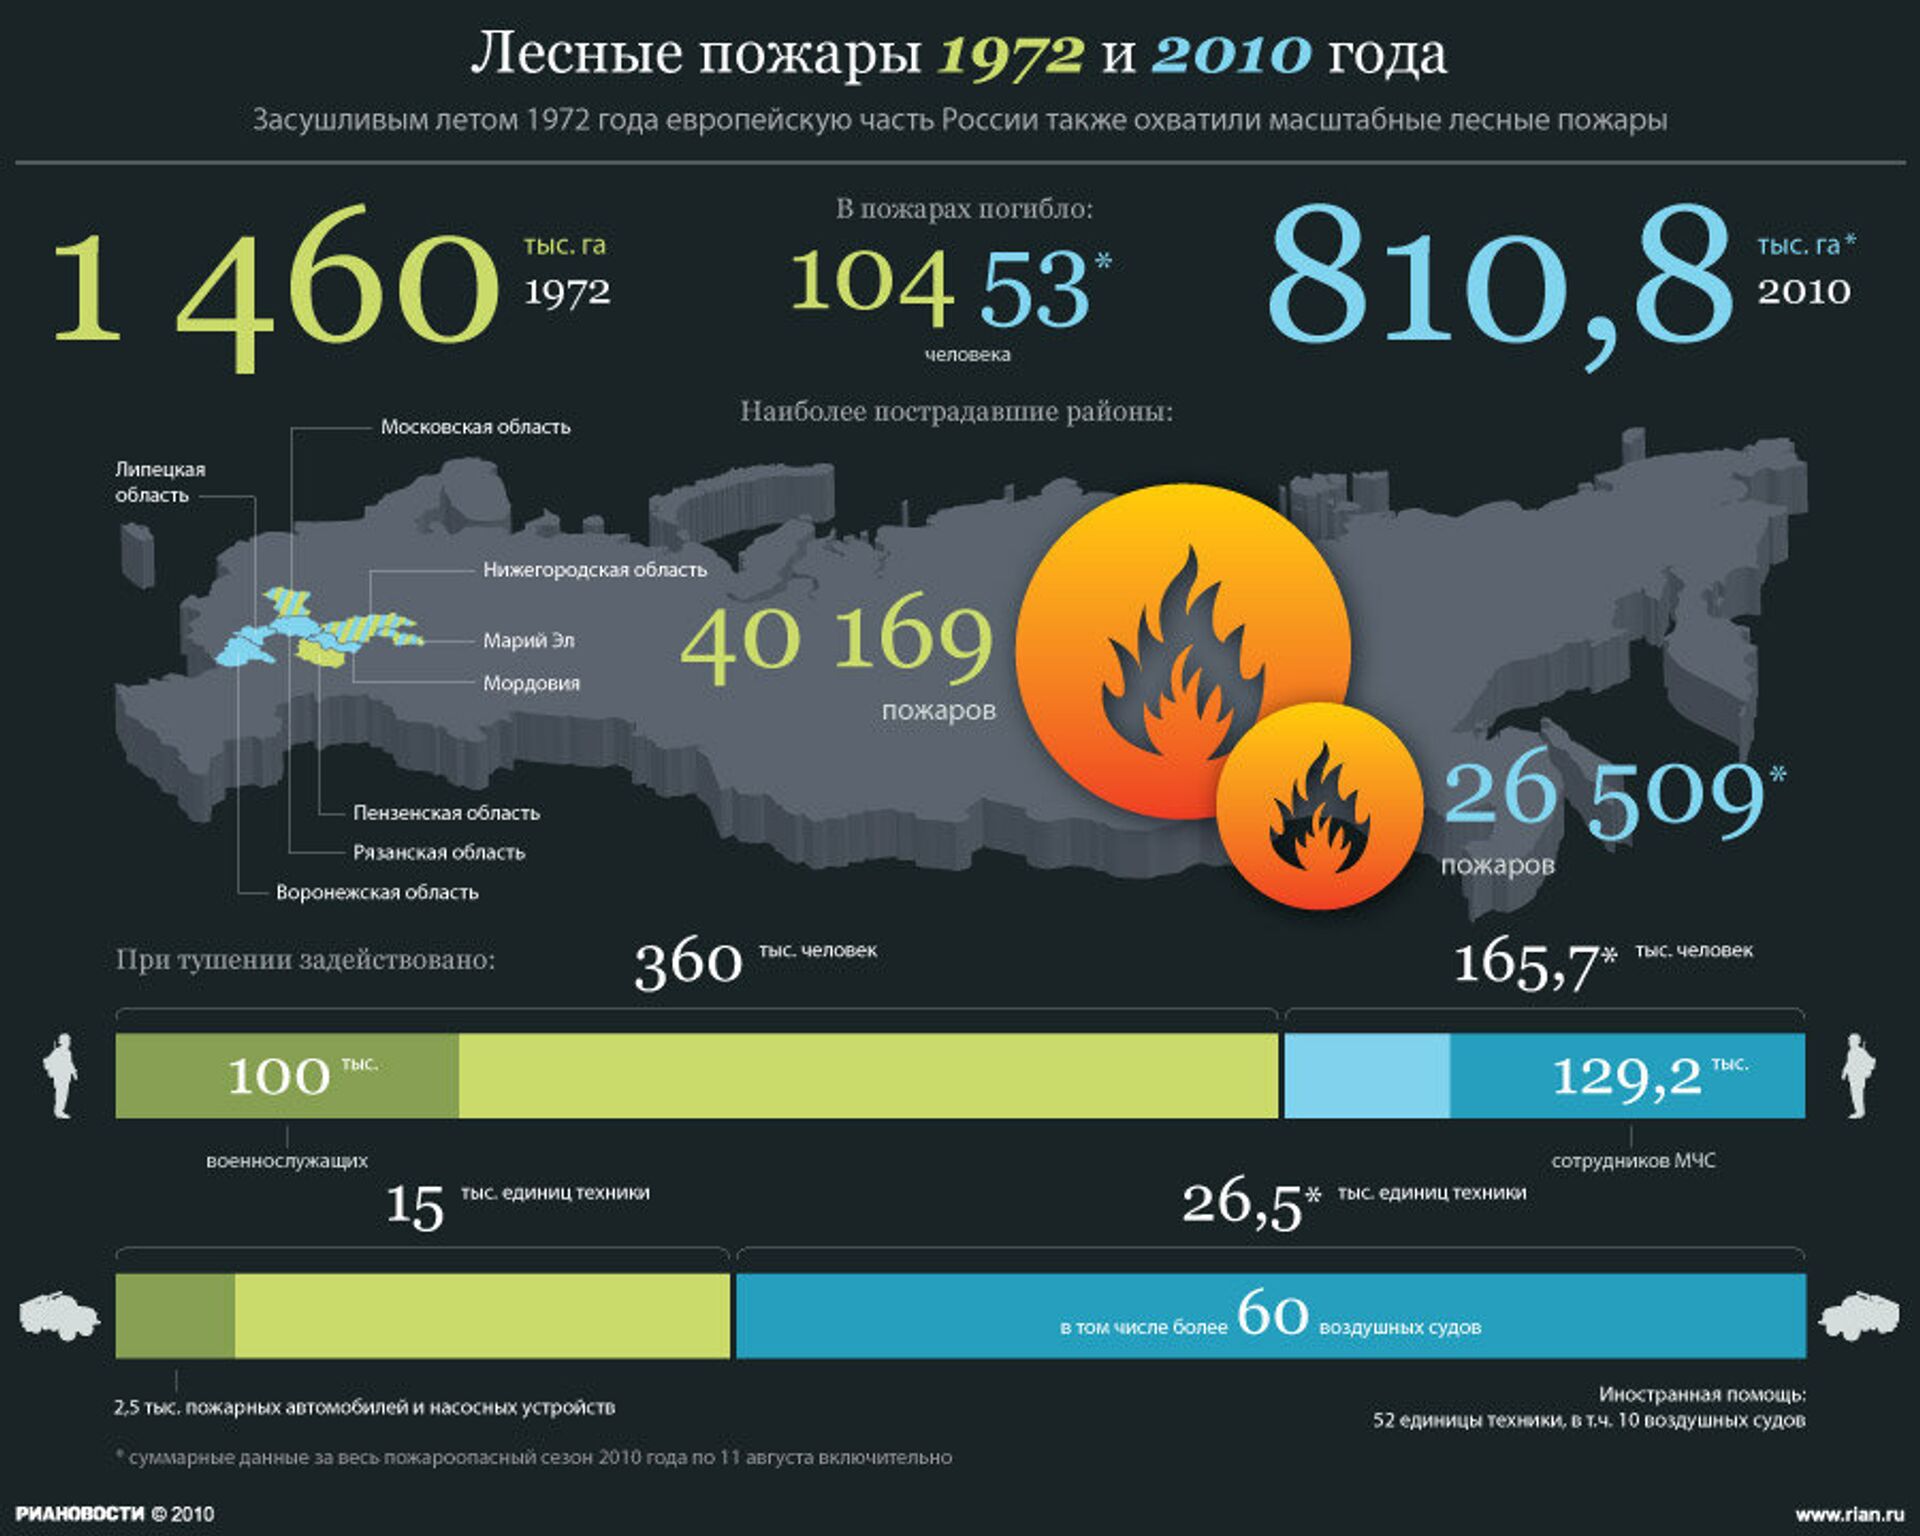 Интернет в 2010 году в россии